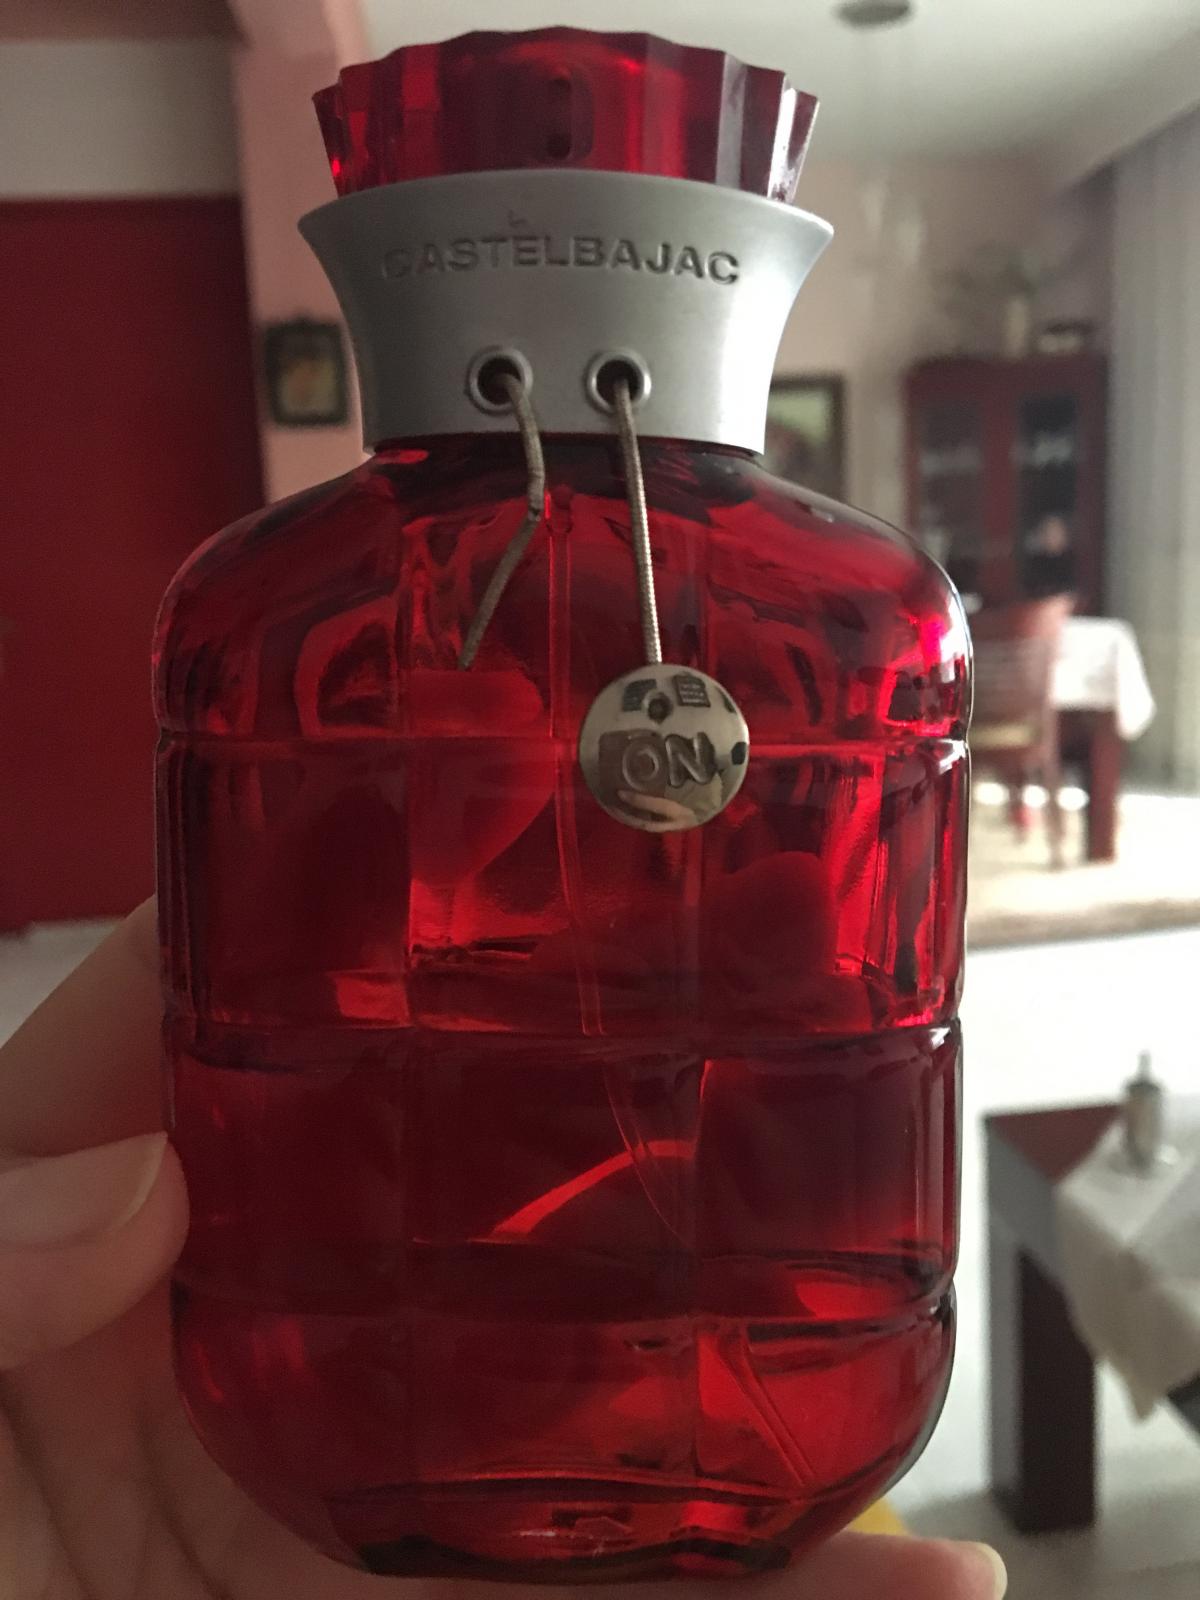 Castelbajac Castelbajac perfume - a fragrance for women 2001